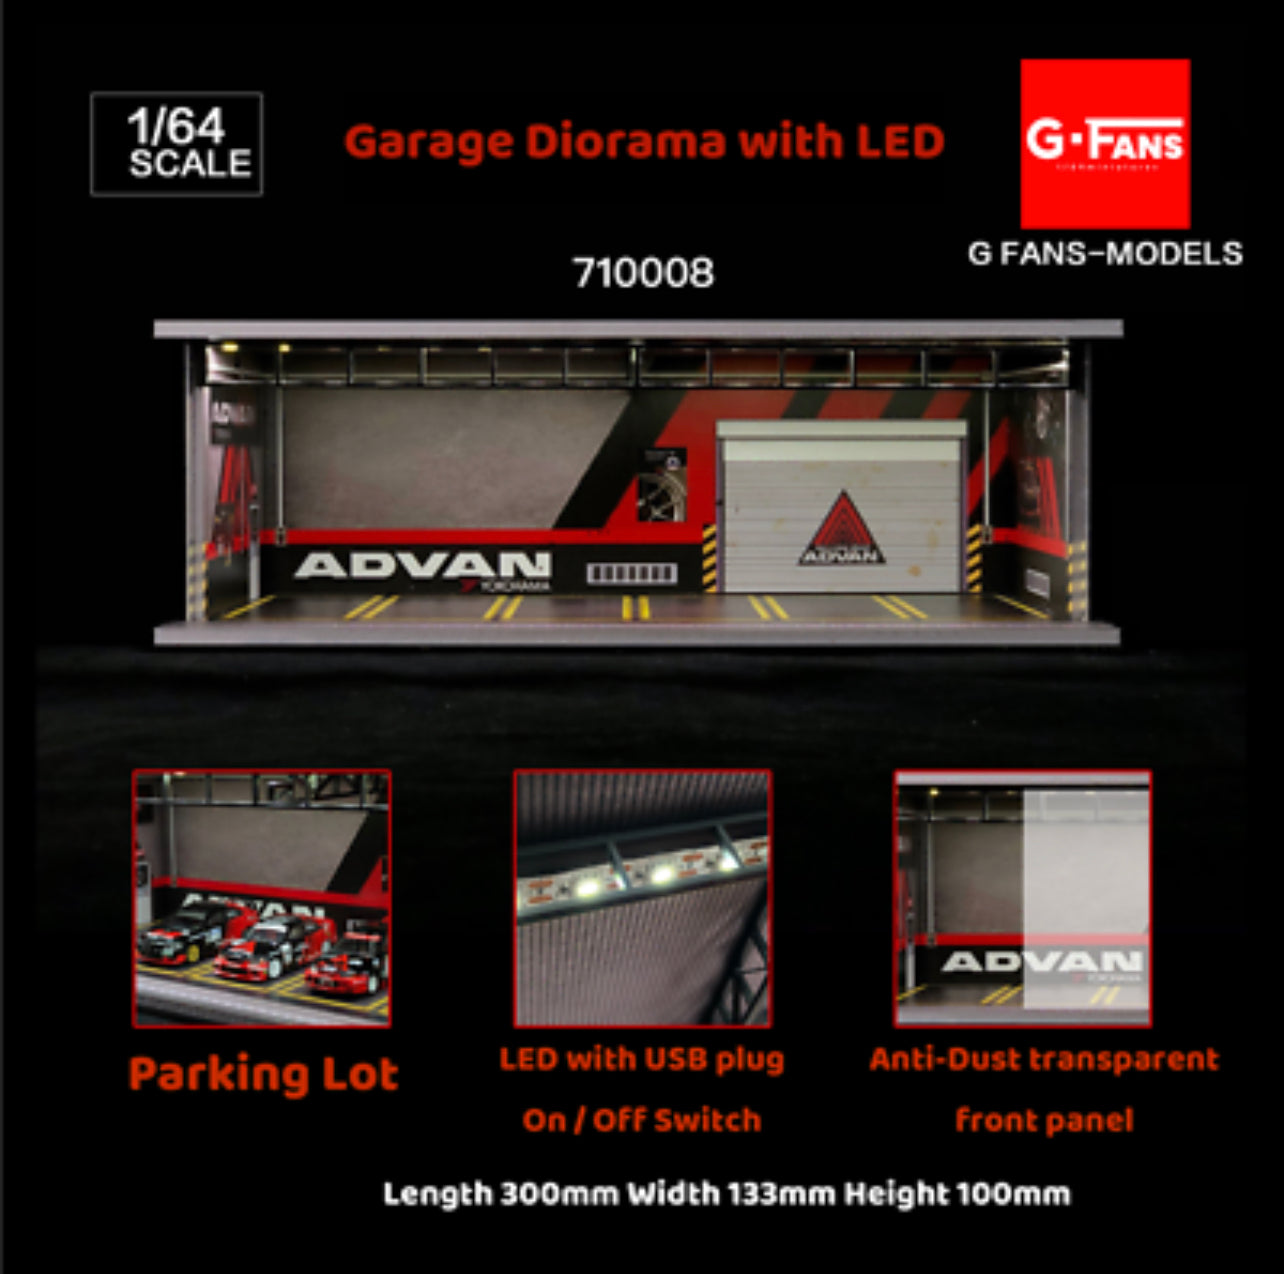 G Fans Advan Garage Diorama